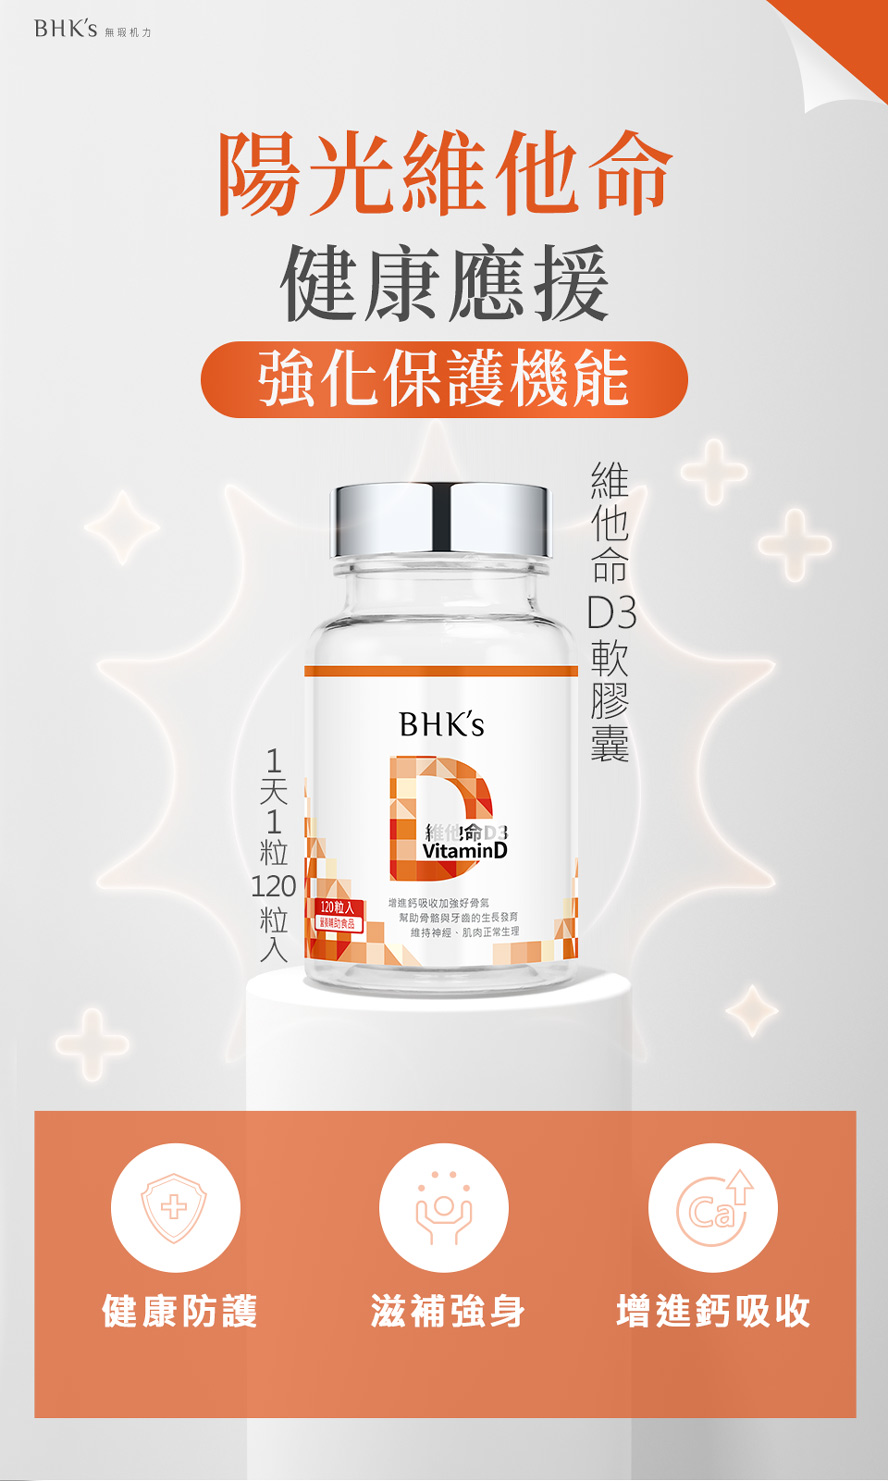 BHK's維他命D3又稱為陽光維他命，提升抵抗力、減少過敏反應、維持身體健康的營養素。